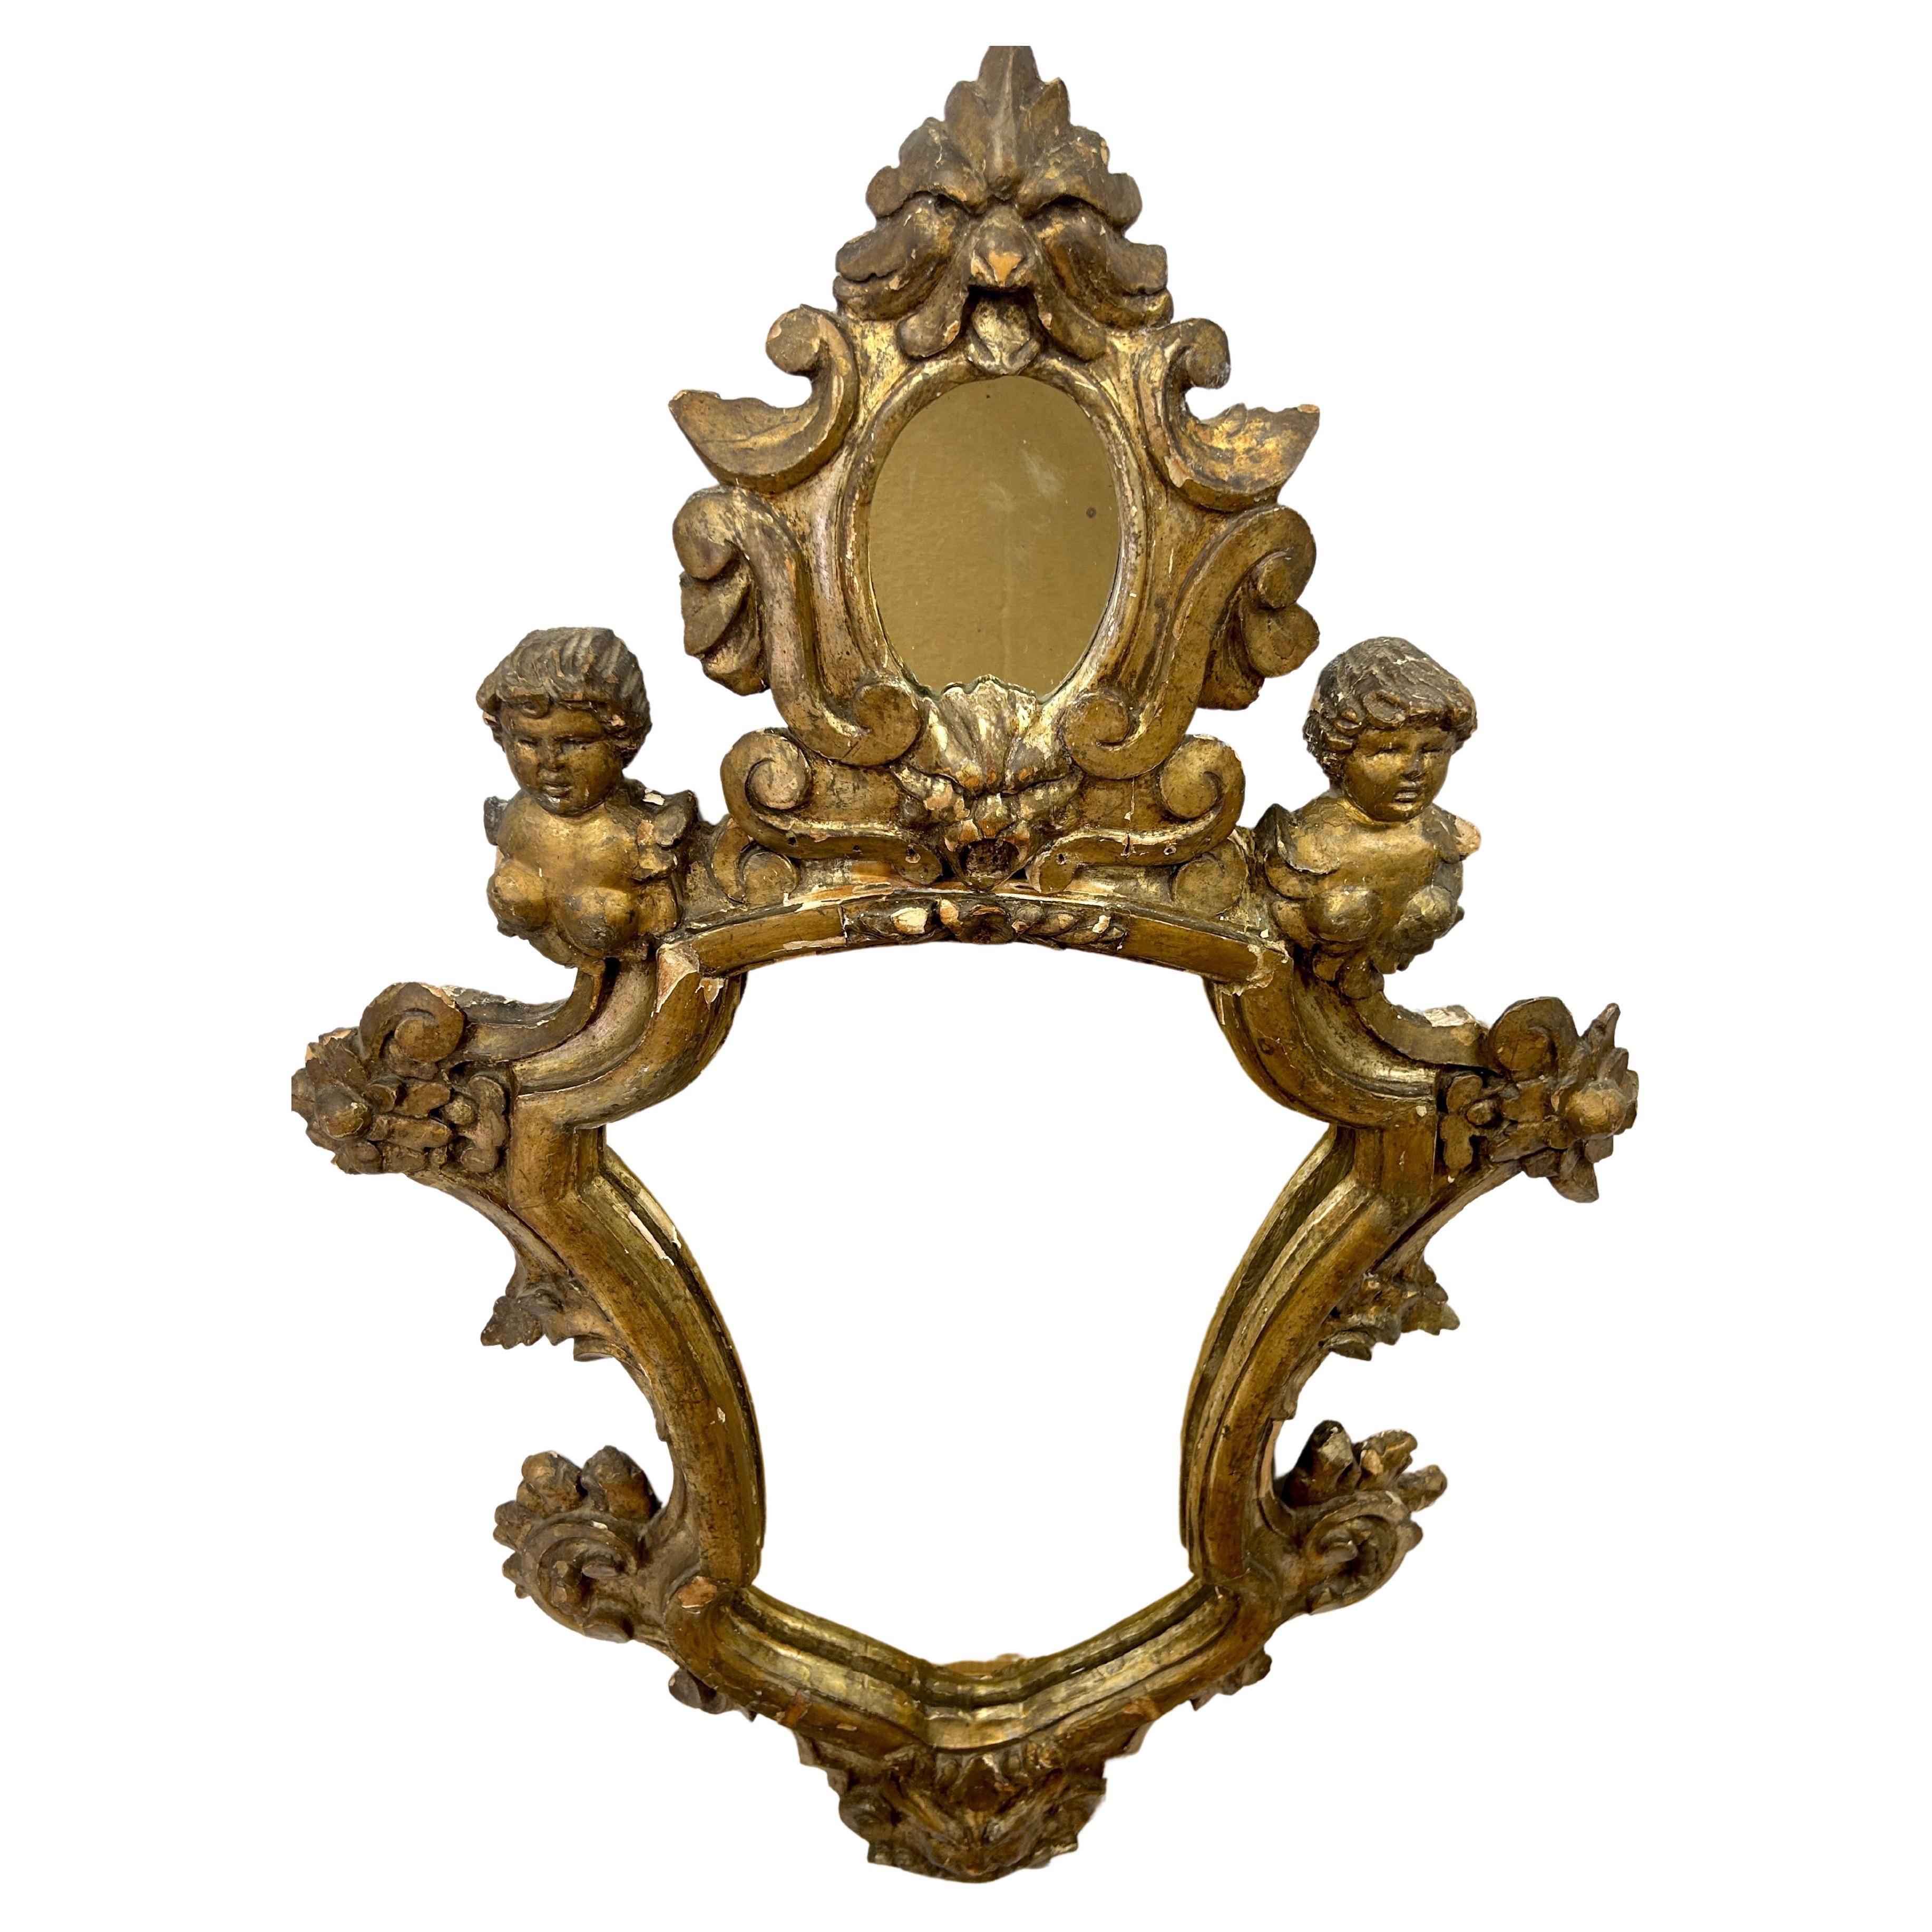 Grand miroir mural italien de style baroque en bois doré avec des chérubins et un cadre sculpté de feuillages. Le petit miroir ovale est entouré de bois doré sculpté et surmonté d'un miroir plus grand avec une sculpture florale dorée se terminant